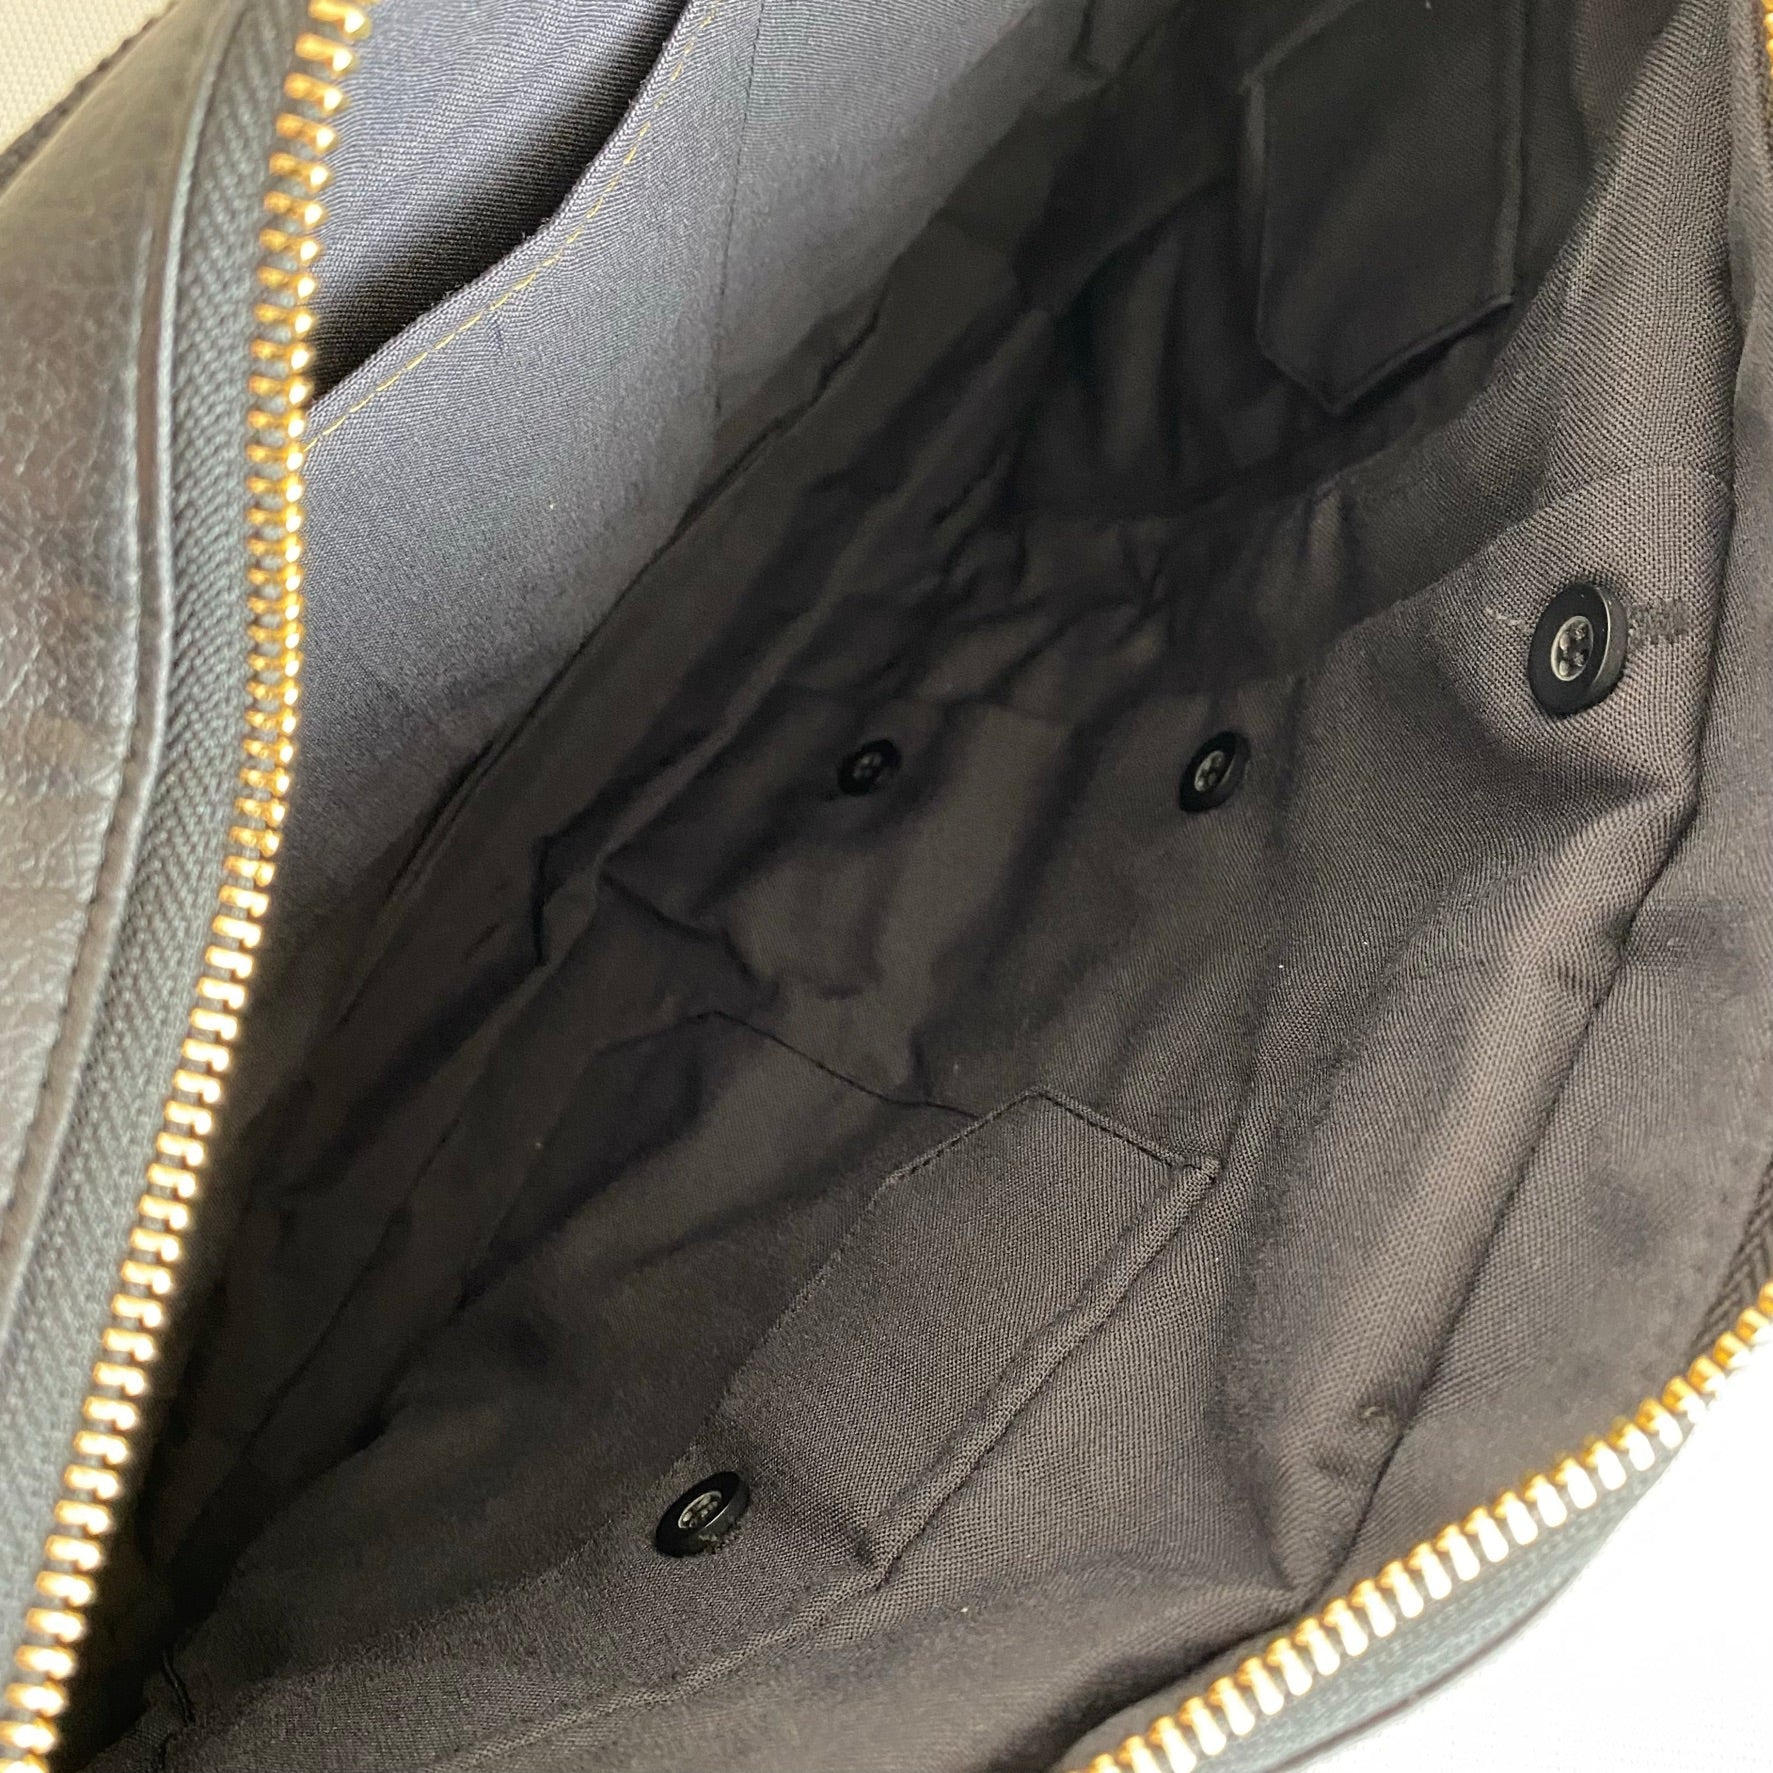 West Point Dress Gray Uniform Zippered Convertible Handbag